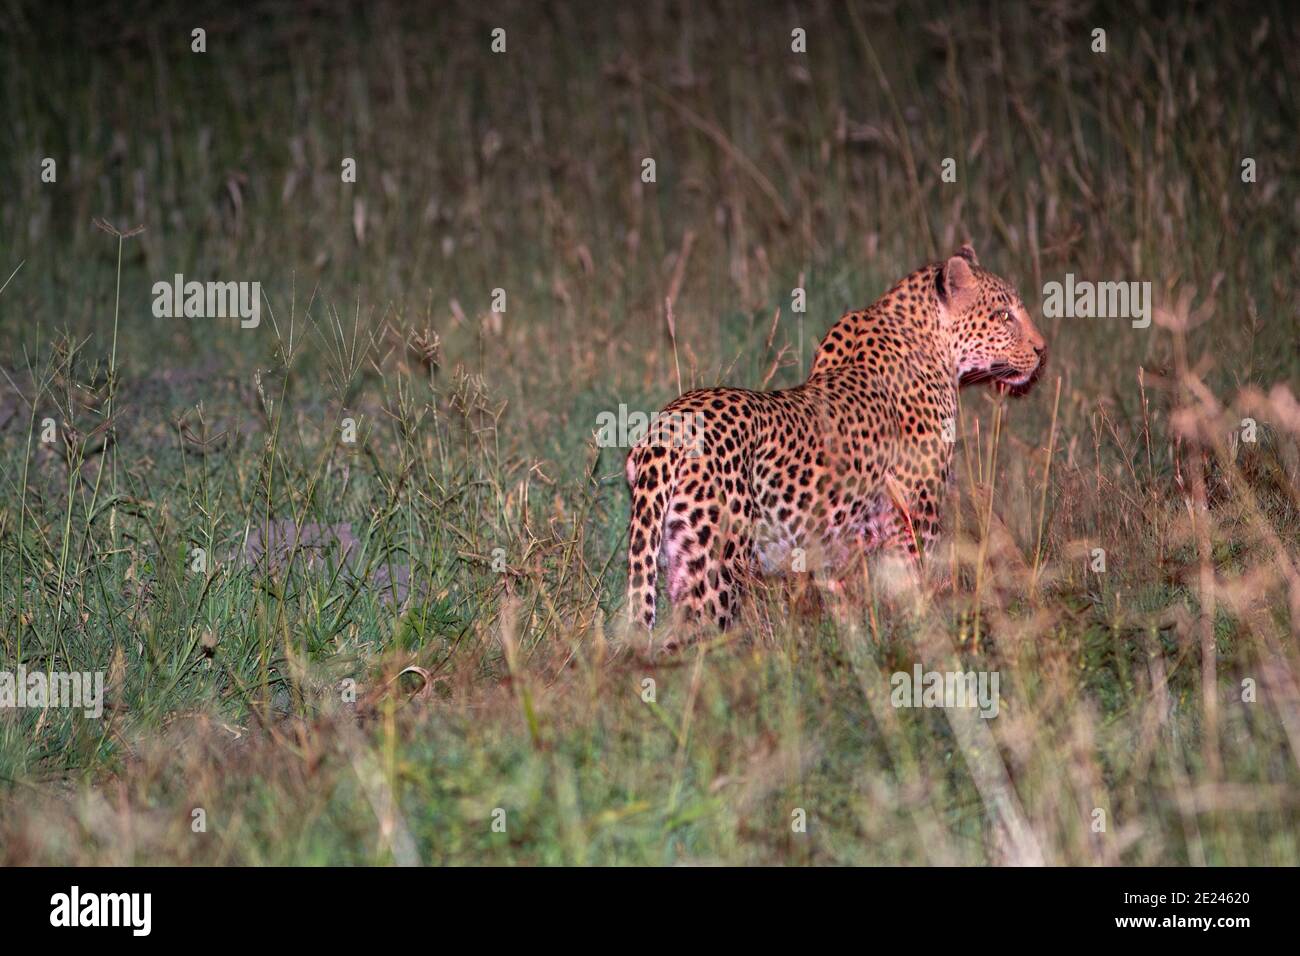 Leopard (Panthera pardus), nächtliche Aktivität. Tier im Freien mit Spot Licht von einem lizenzierten Allradfahrzeug gefangen. Botswana. Stockfoto